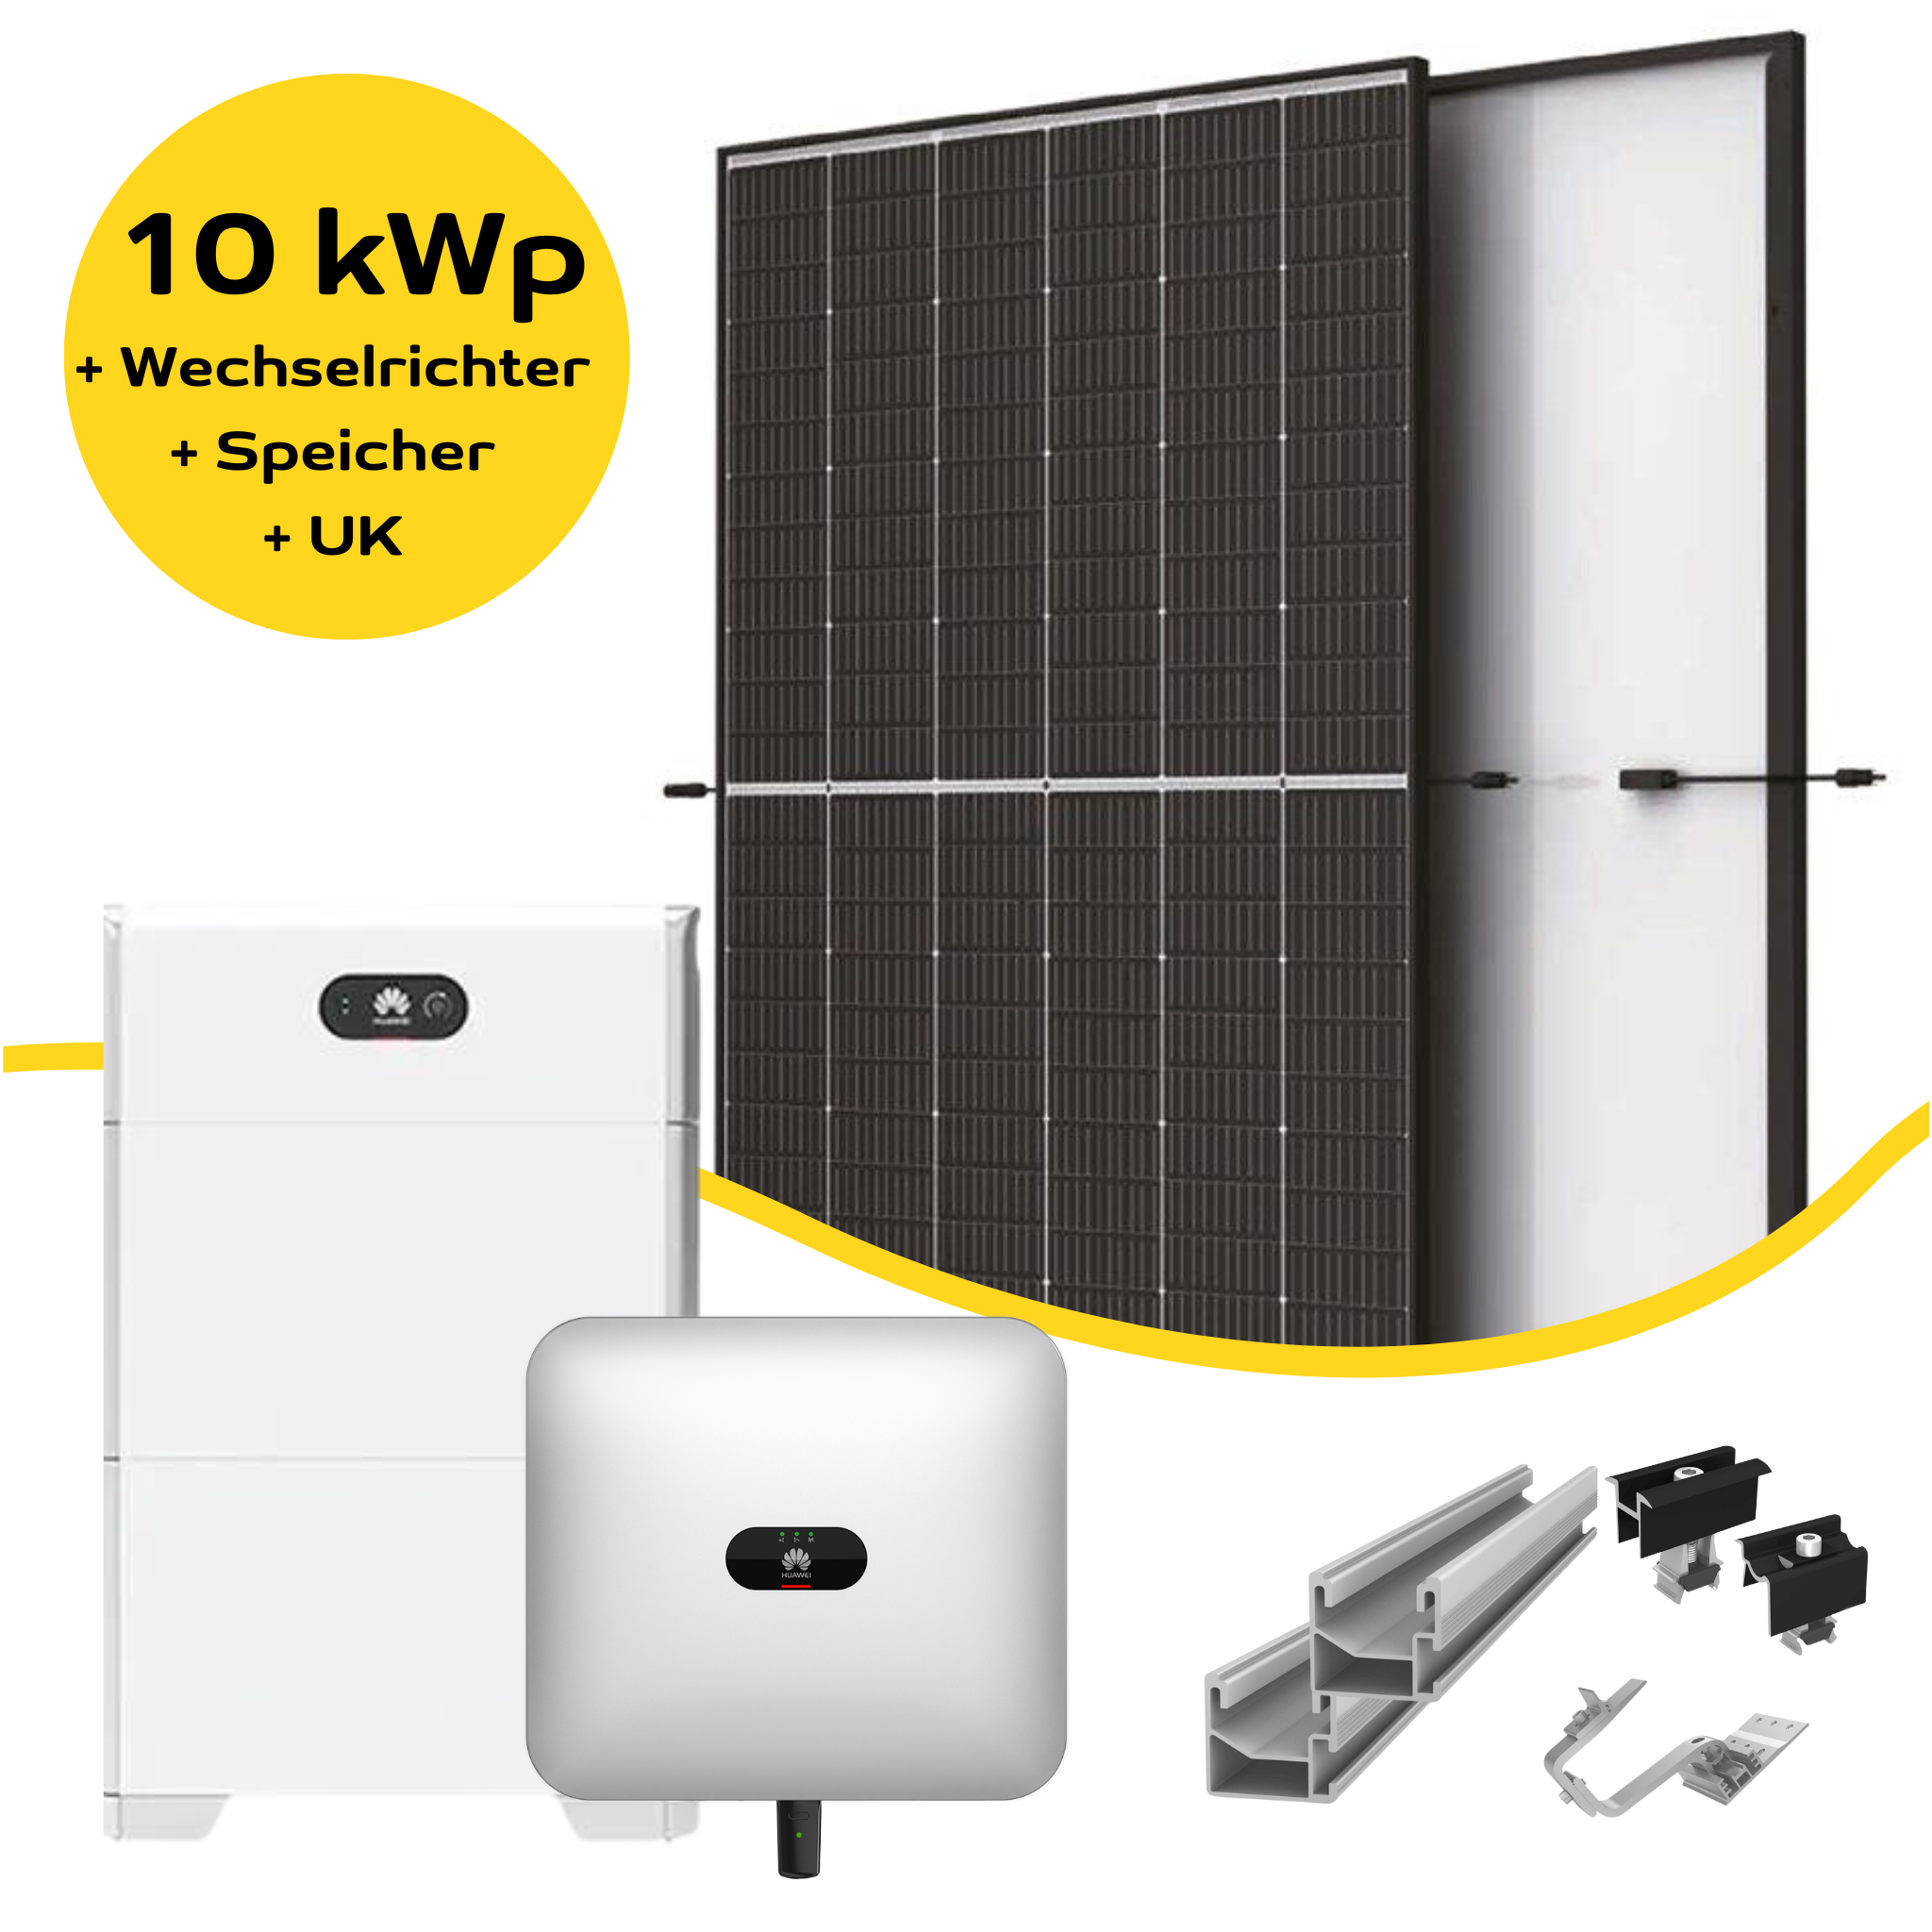 10 kW PV-Anlage-Komplettsystem mit Trina Modulen & Huawei Wechselrichter + Speicher